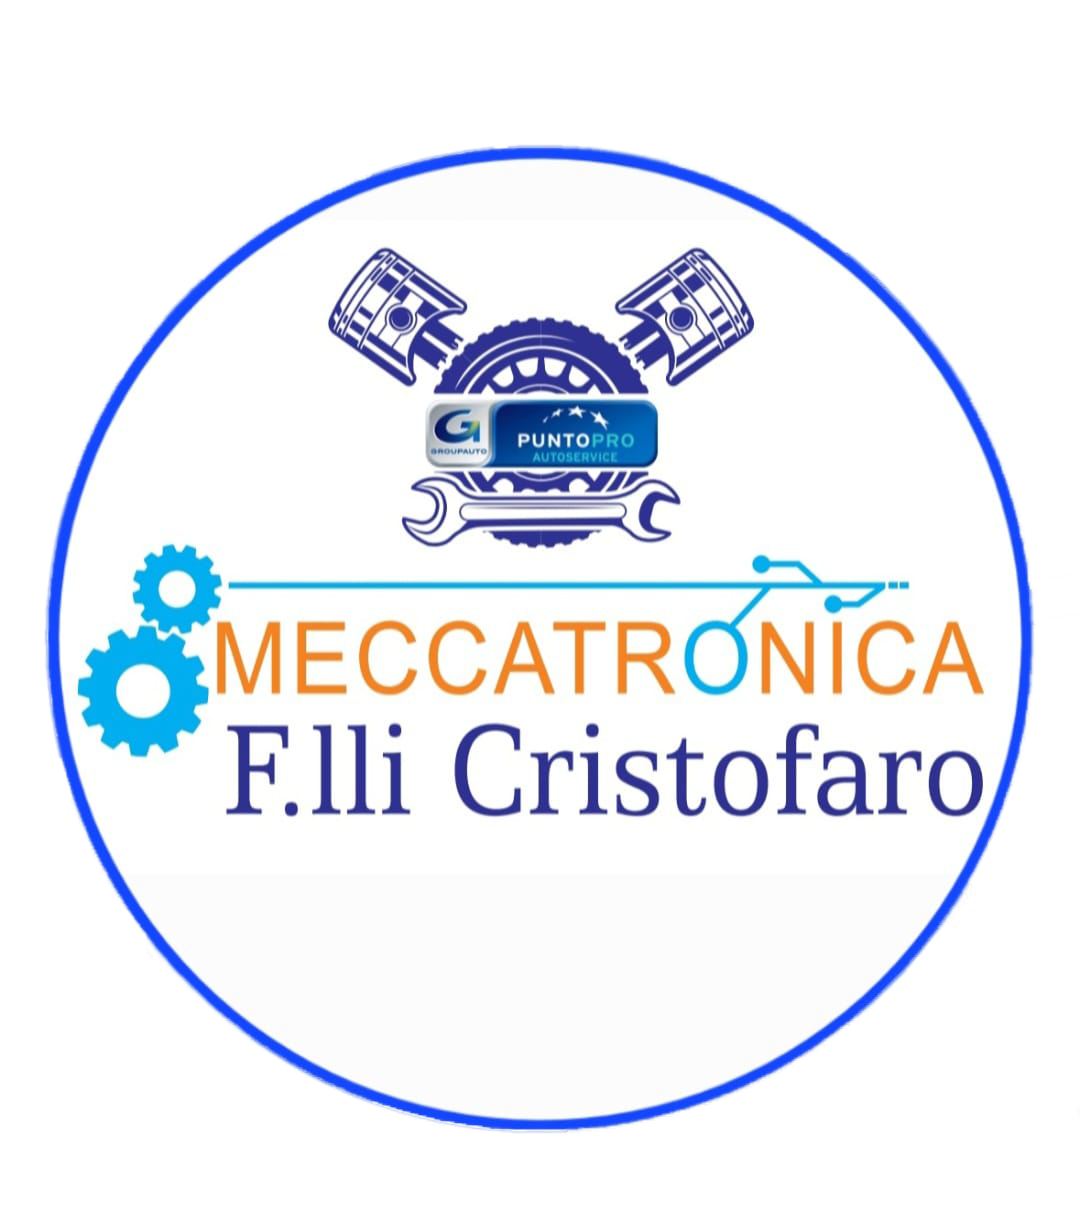 Meccatronica F.lli Cristofaro